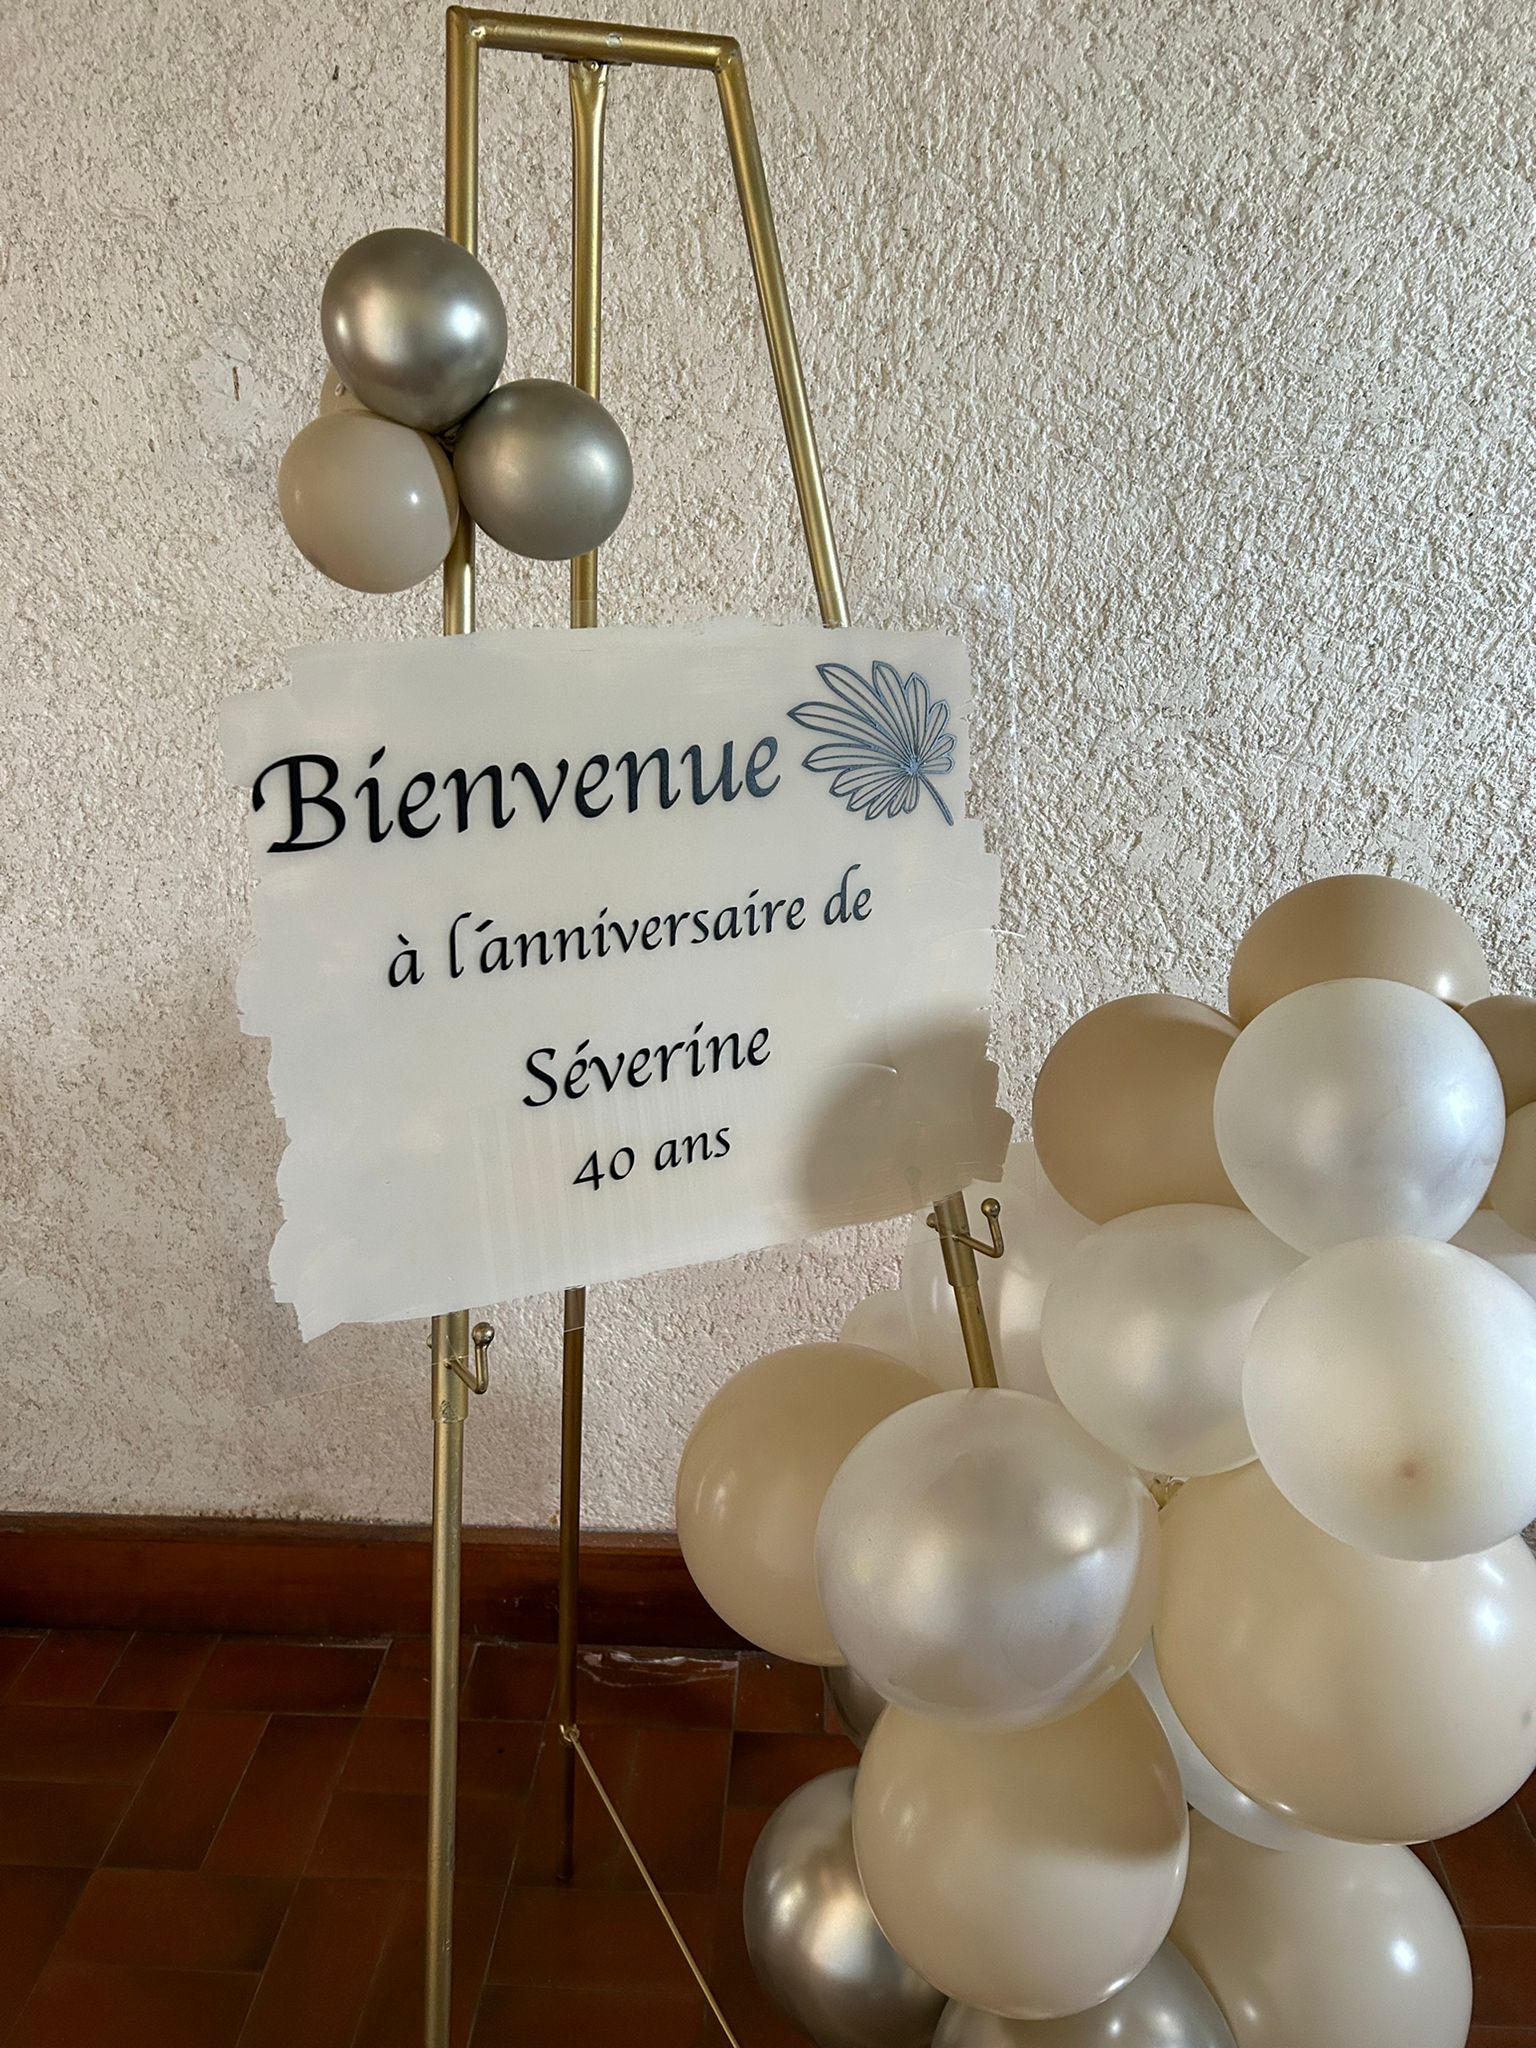 décoration organisation anniversaire bohème Morbihan Bretagne Loire atlantique ile et vilaine cote d'armor